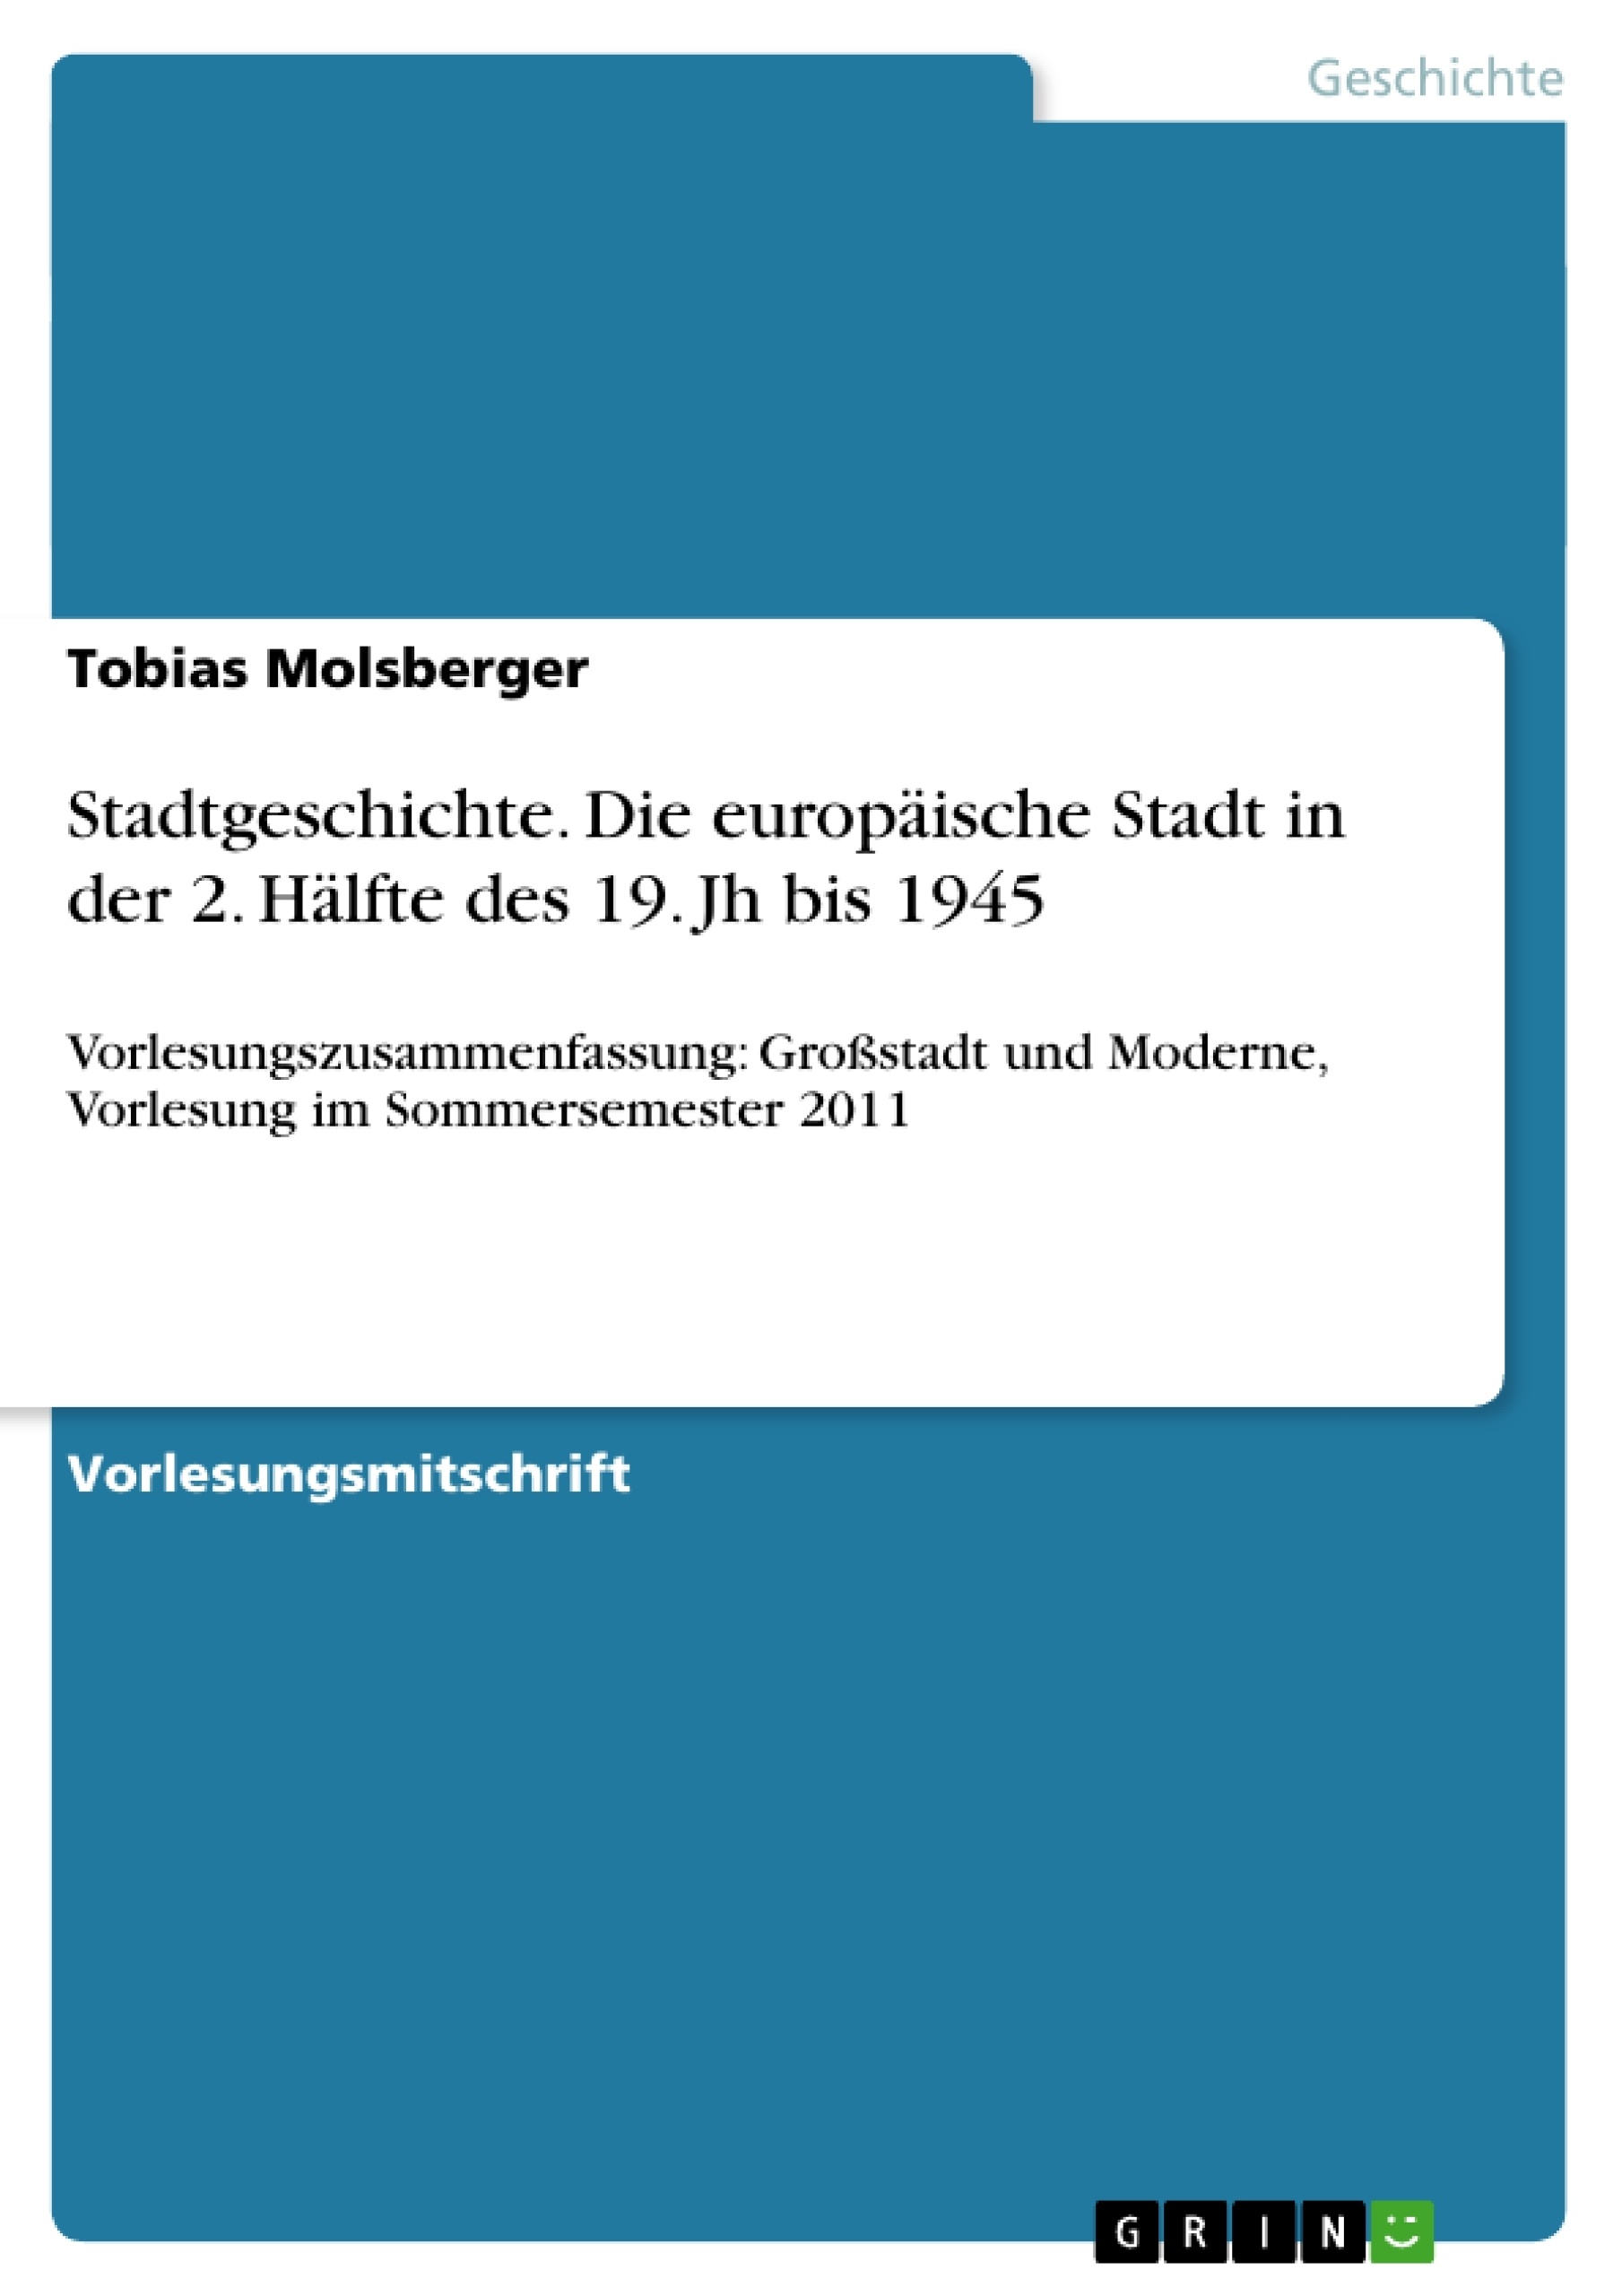 Title: Stadtgeschichte. Die europäische Stadt in der 2. Hälfte des 19. Jh bis 1945